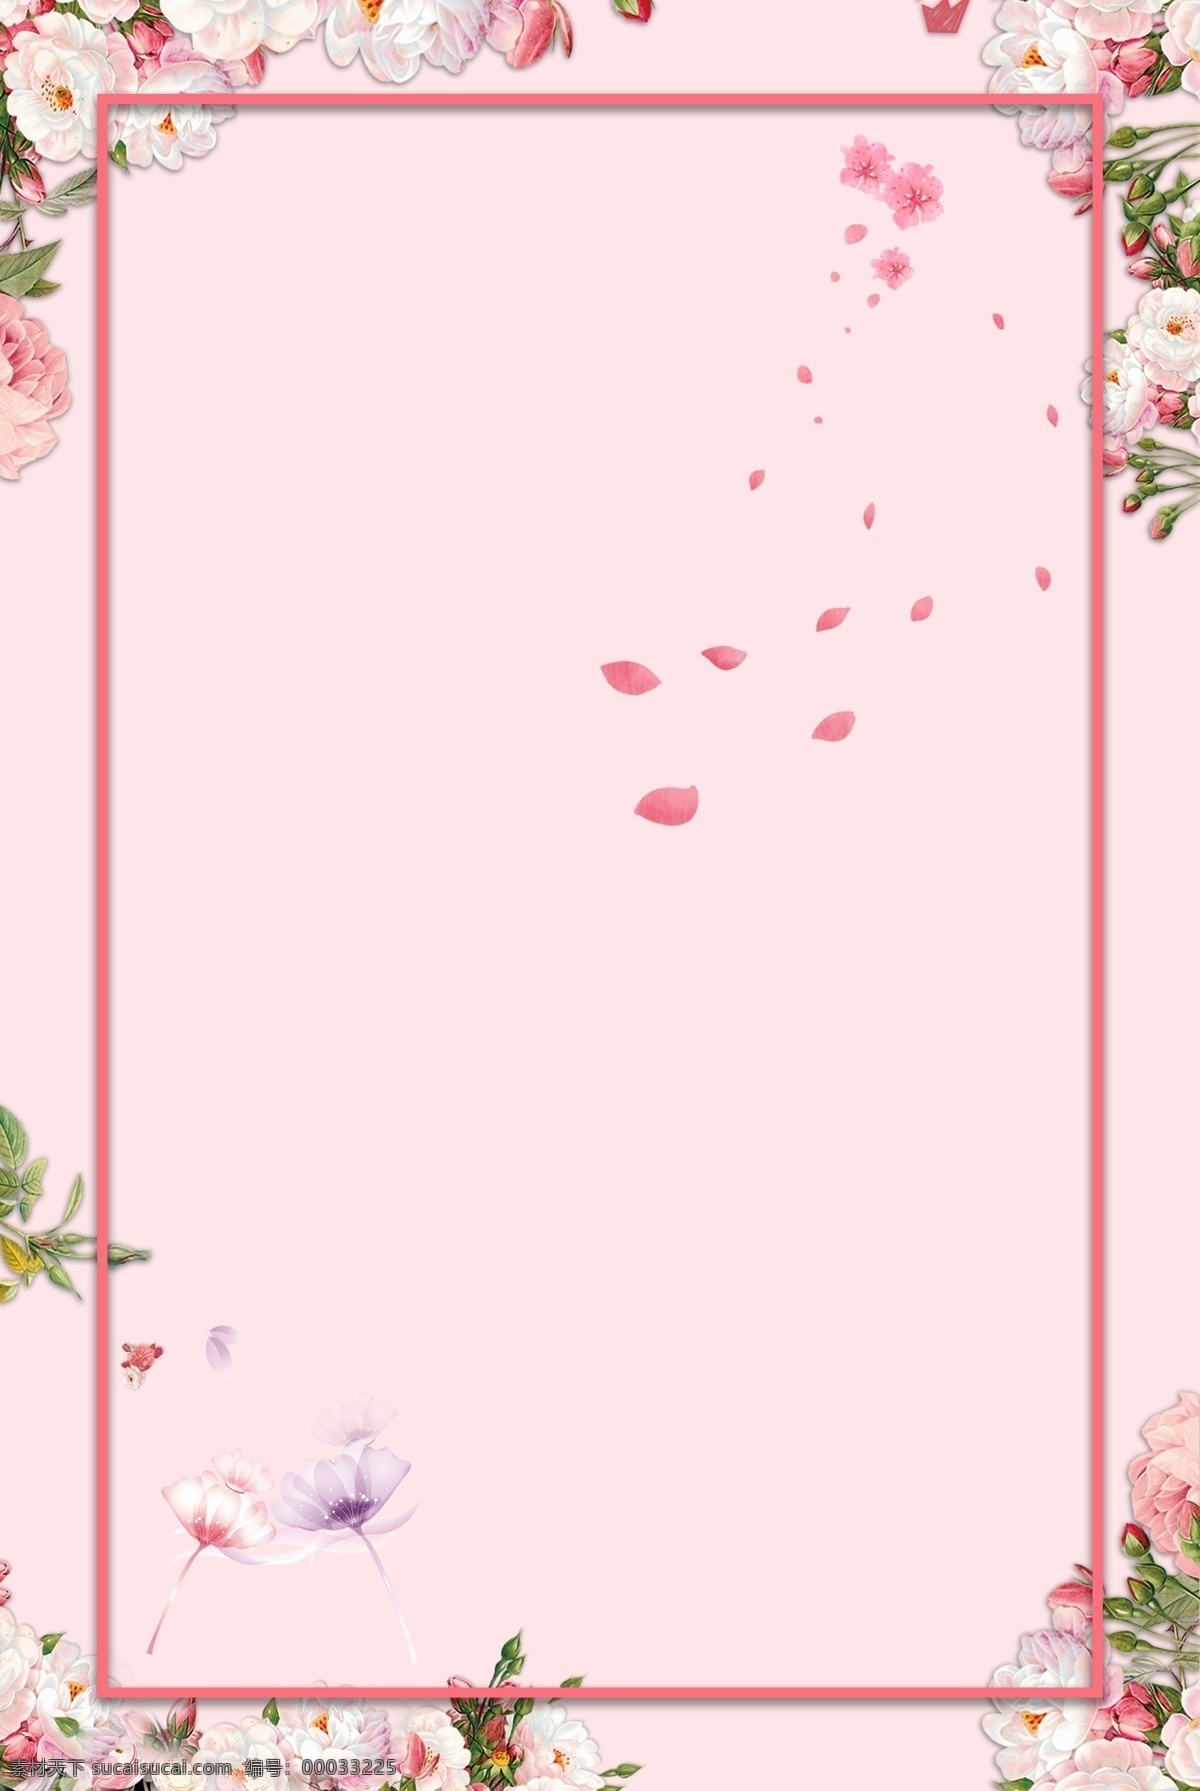 粉色 情人节 花瓣 边框 背景 七夕 花边框 背景素材 花 植物 夏季 新品 上新